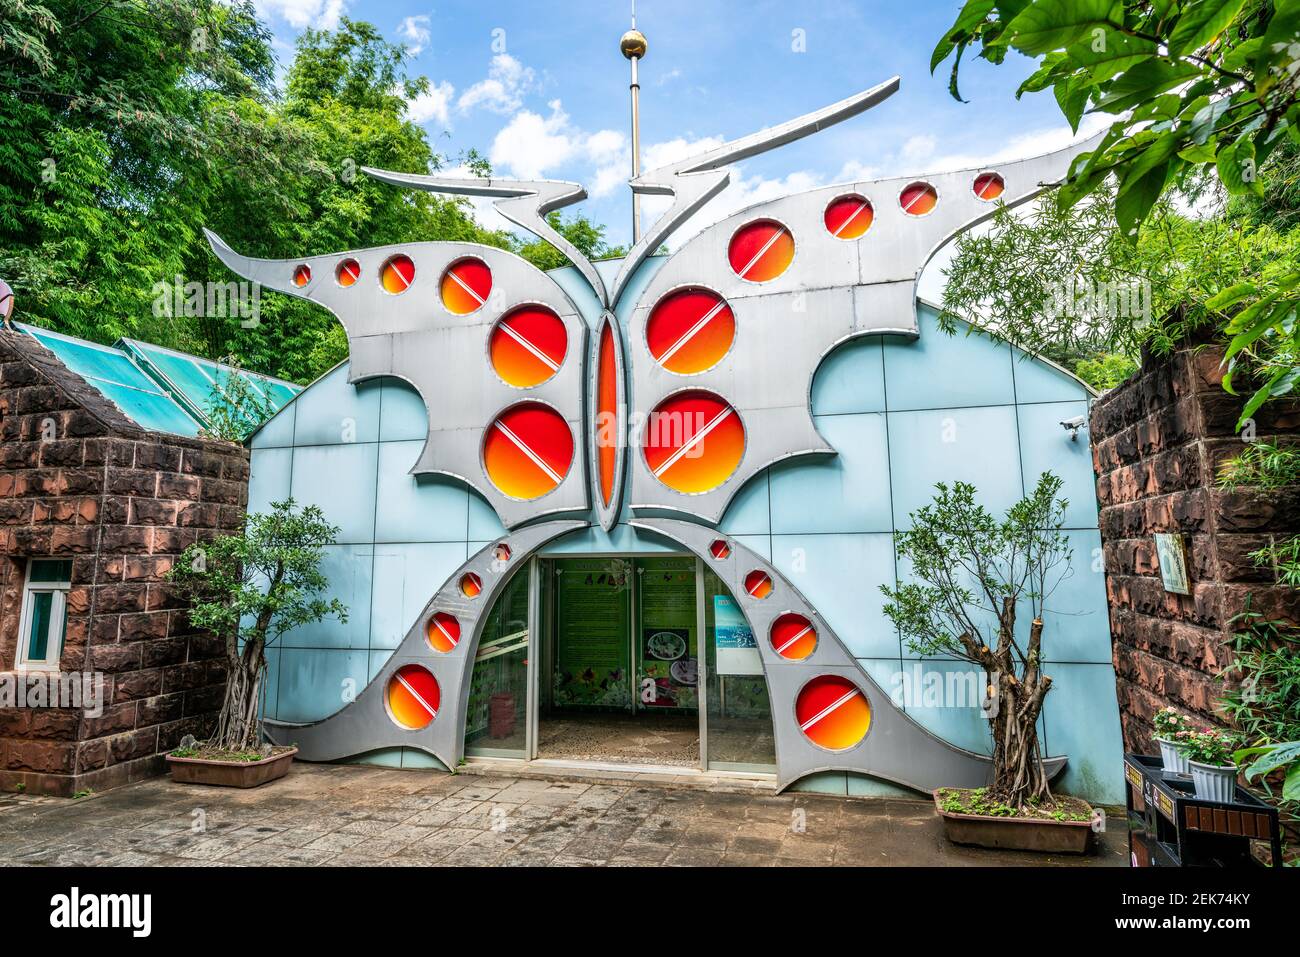 Dali Chine , 6 octobre 2020 : entrée de bâtiment en forme de monde aux papillons dans le parc de sources aux papillons de Dali Yunnan en Chine Banque D'Images